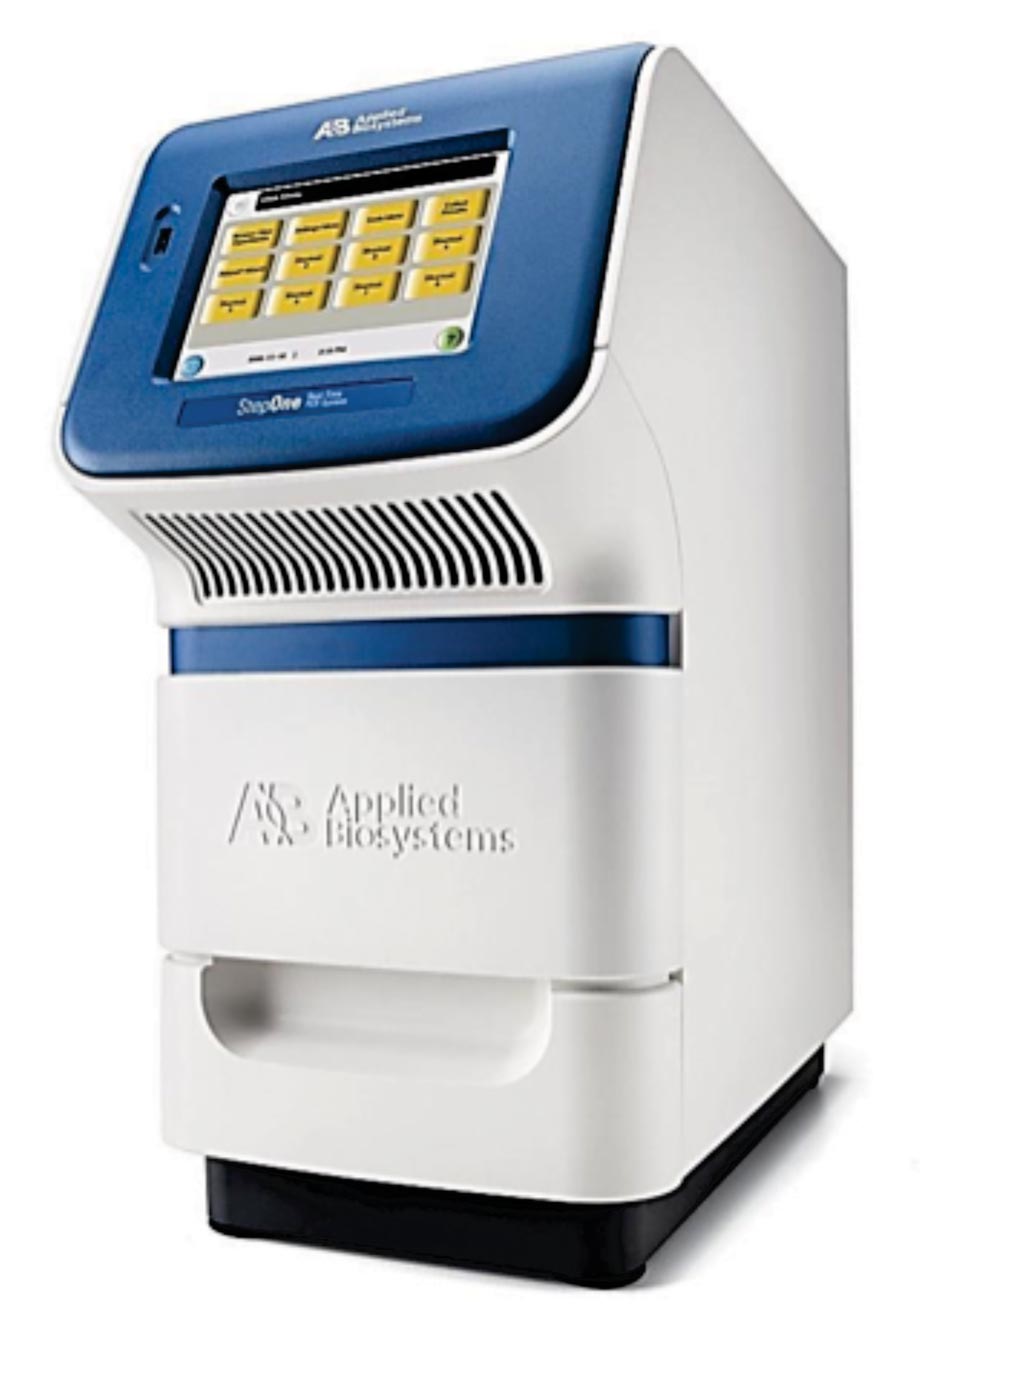 应用生物系统公司的Step One实时PCR（图片蒙赛默飞世尔科技公司惠赐）。